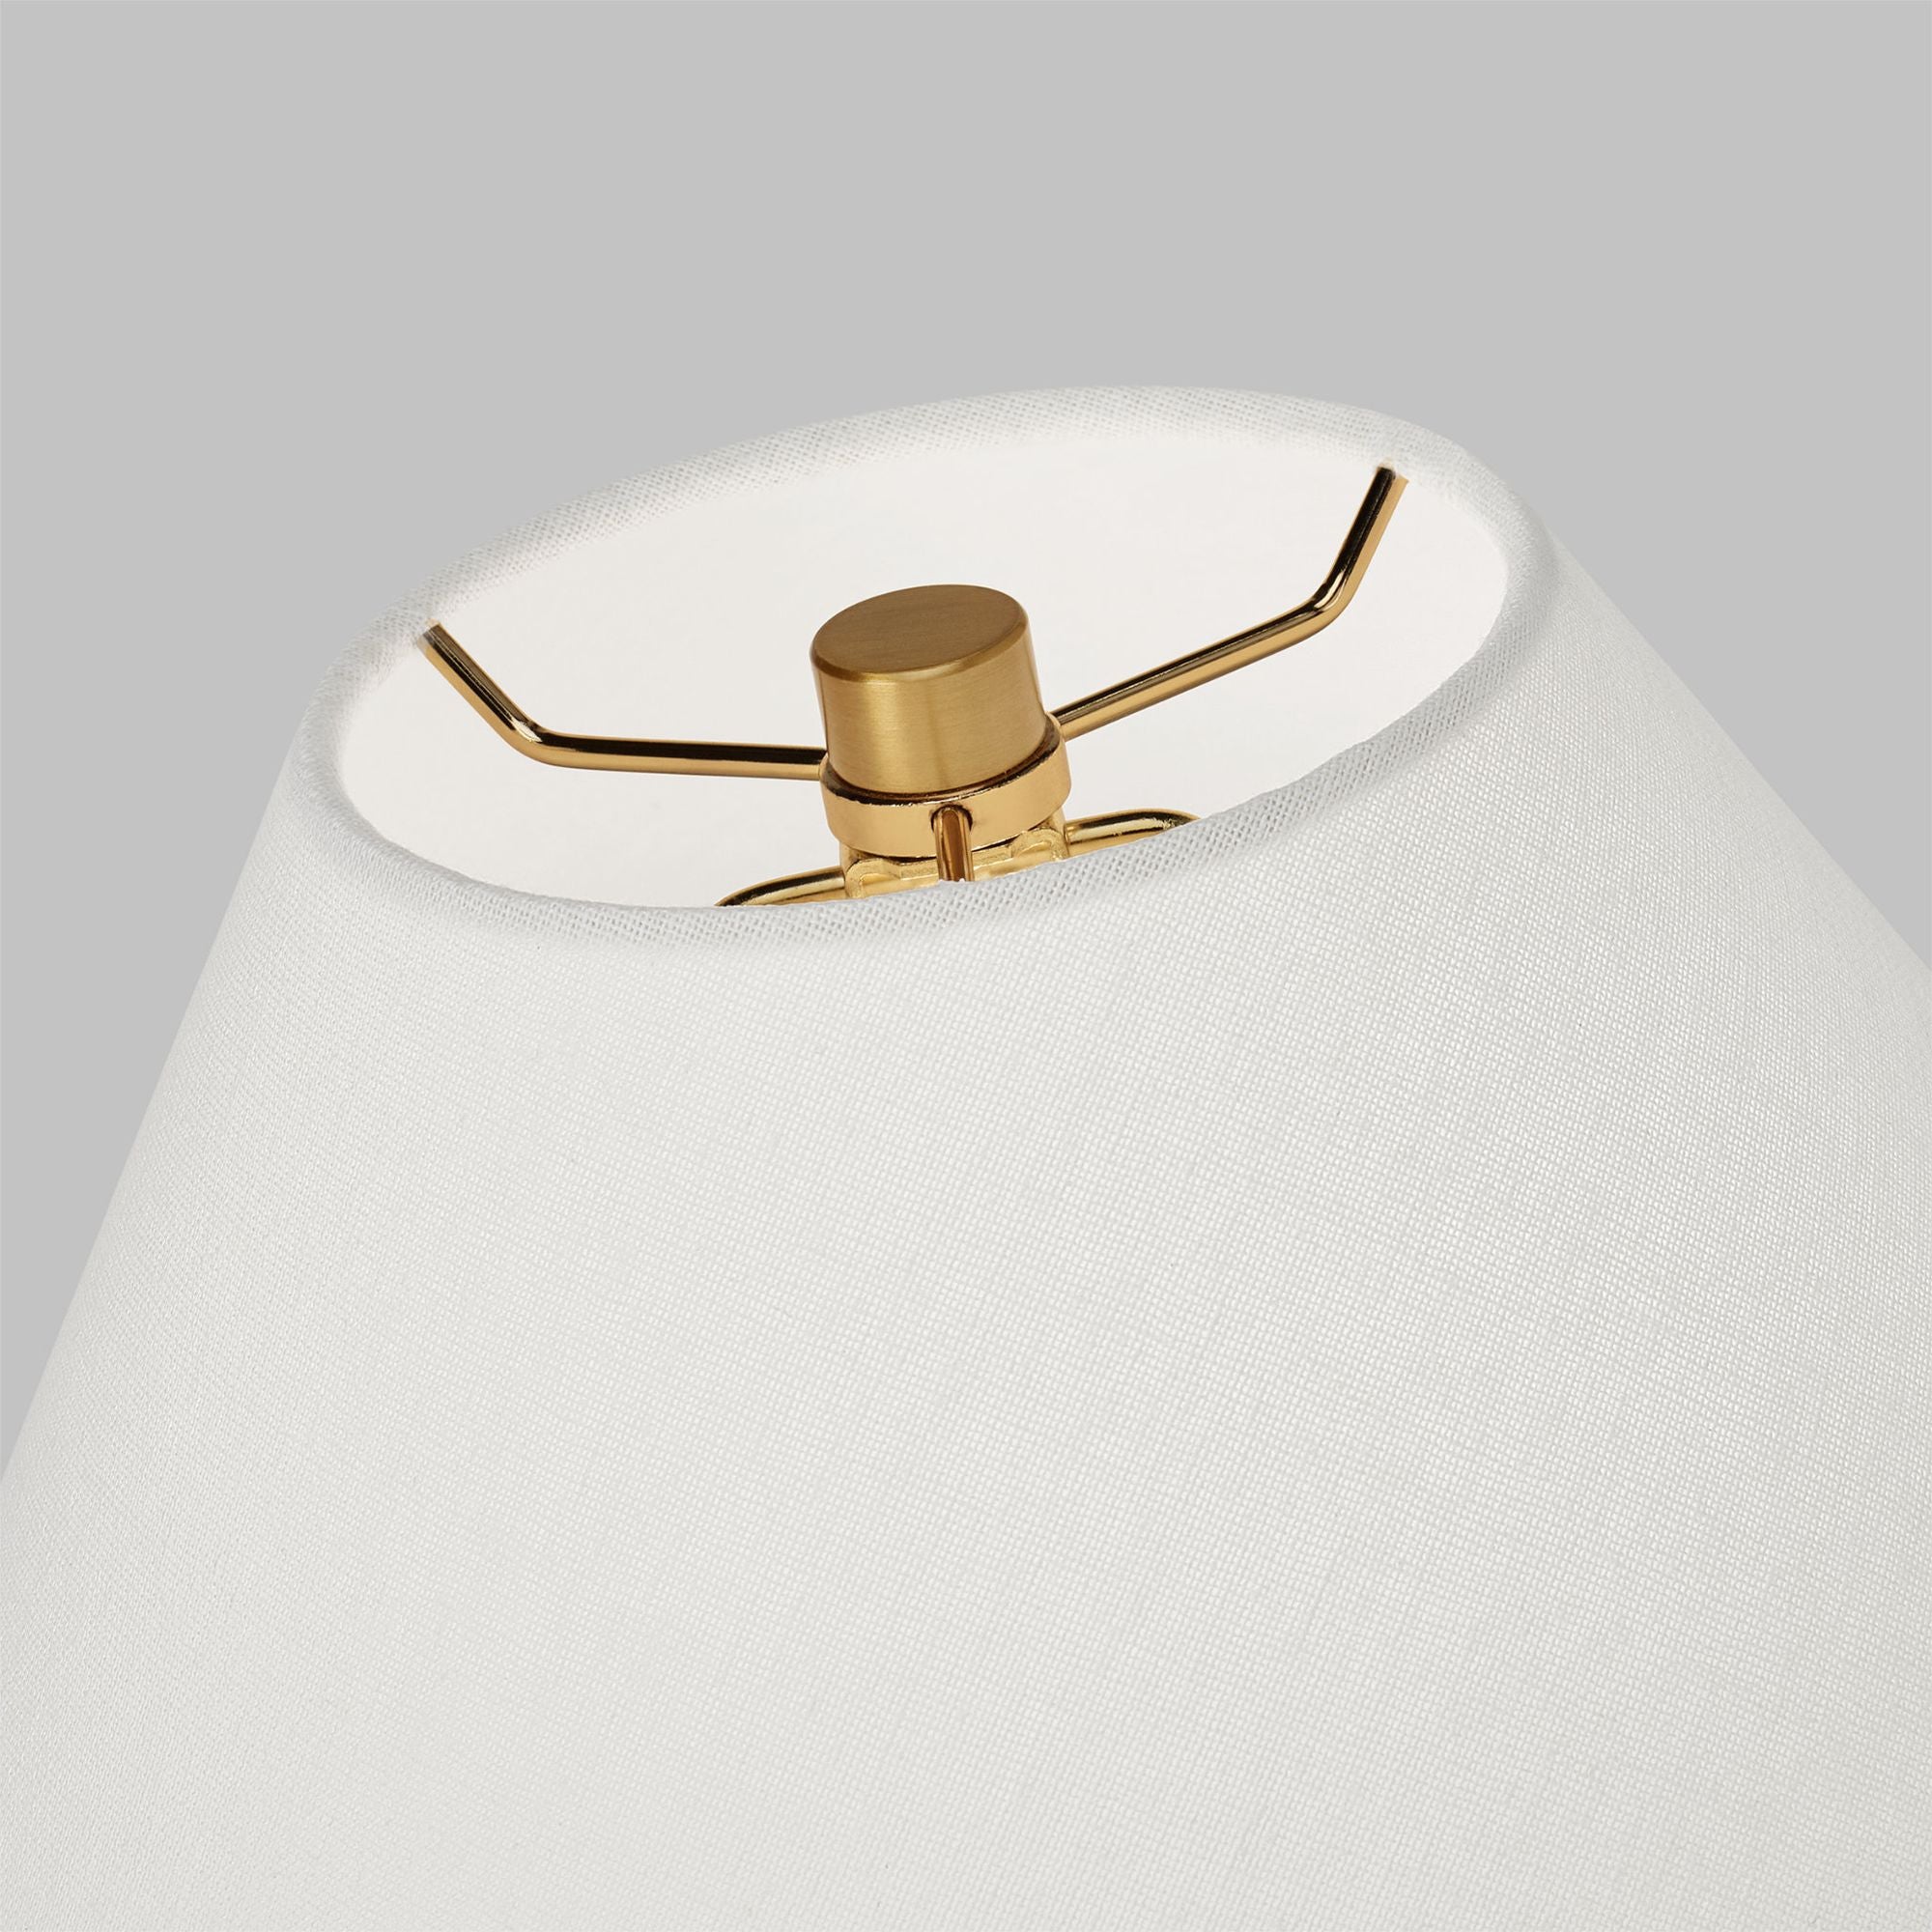 Kelly Wearstler Veneto Small Table Lamp in Matte Concrete